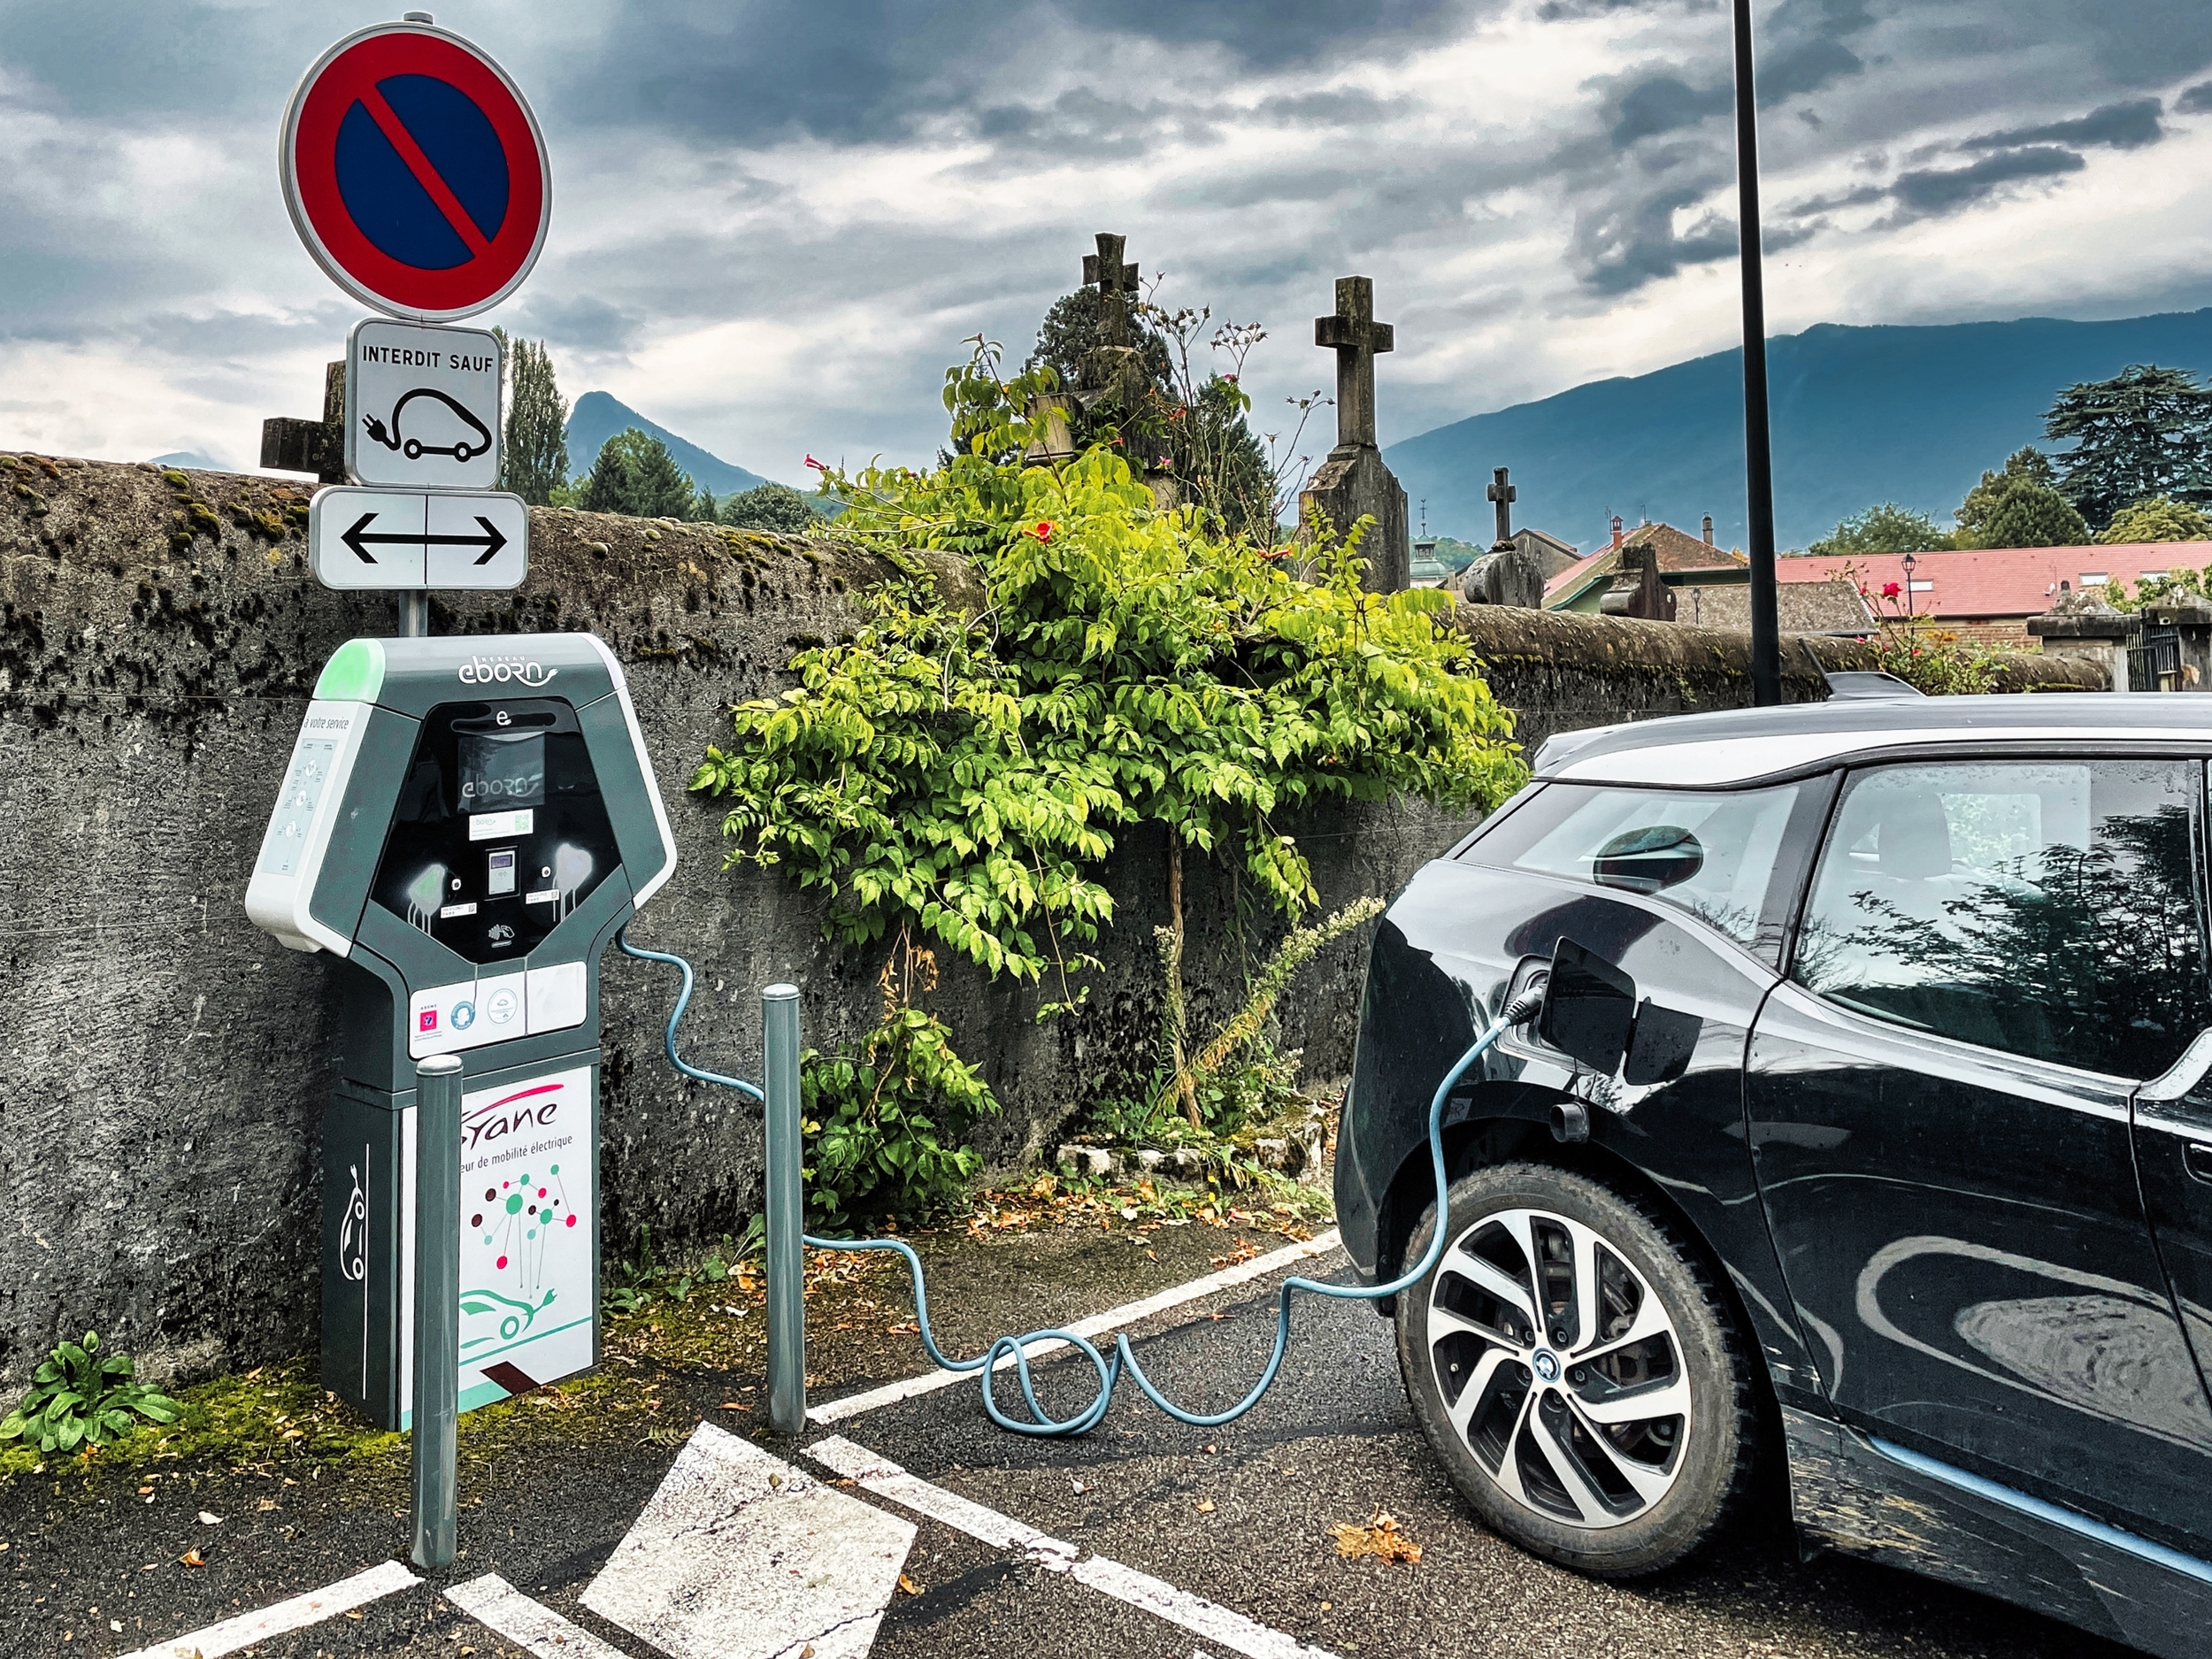 Les nouvelles stations de recharge de voiture électrique doivent proposer le paiement par carte ou sans contact